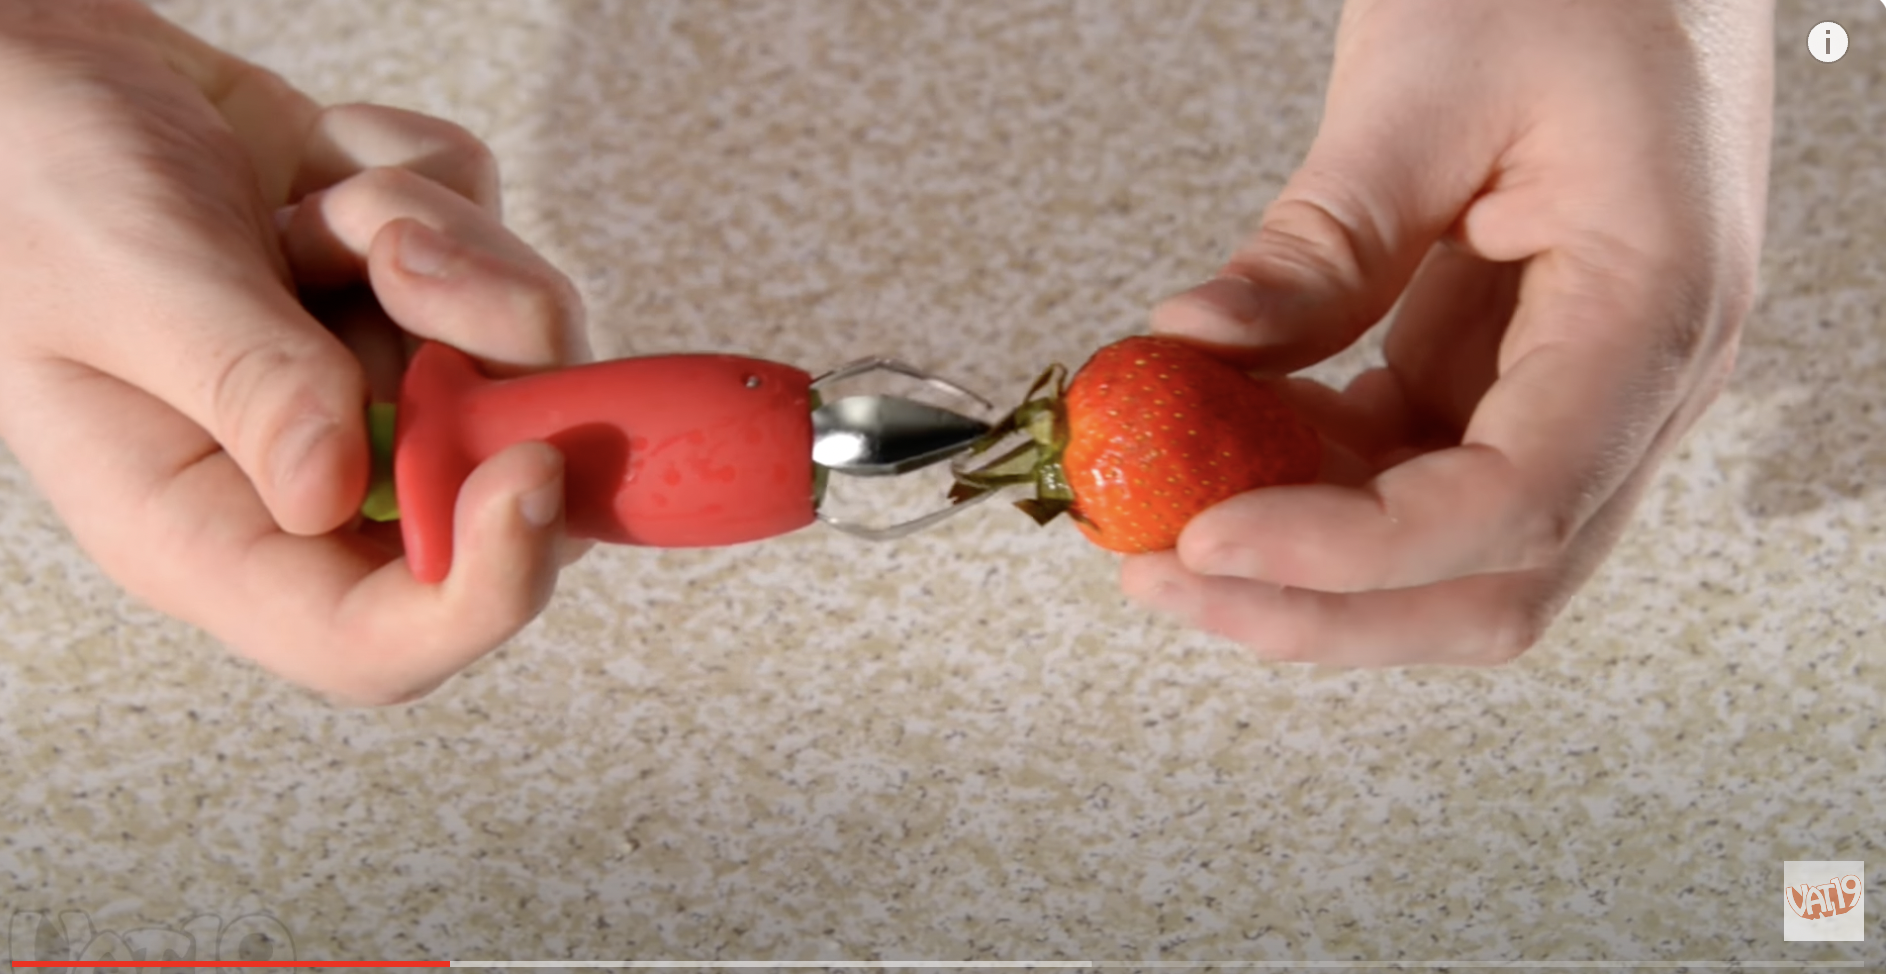 Un équeuteur en train de retirer le pédoncule d'une fraise. | Source : Youtube/Vat19